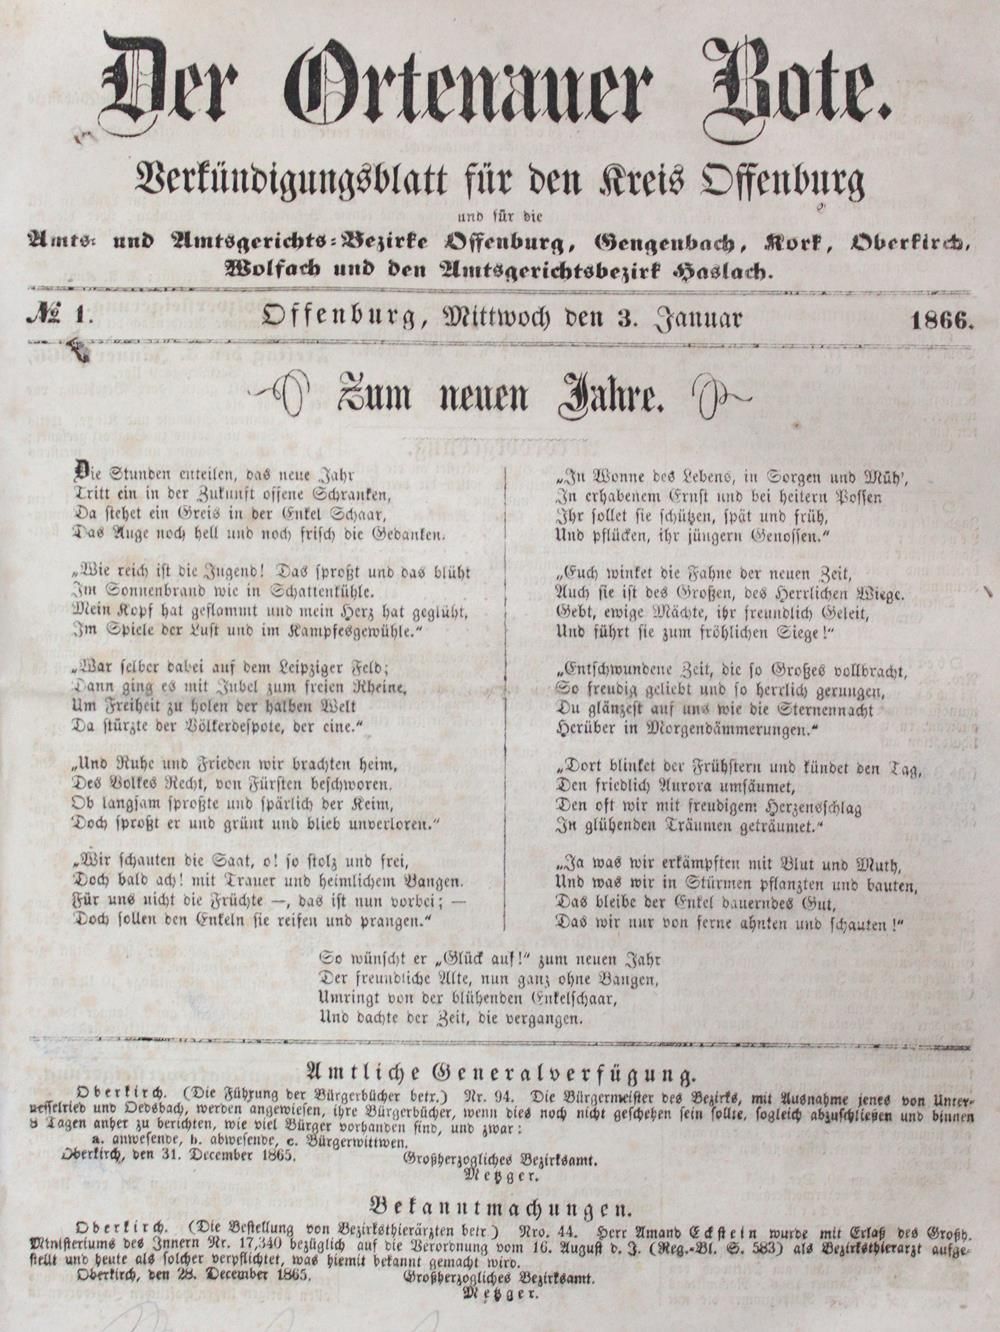 Ortenauer Bote, Der. Boletín de anuncios para el distrito de Offenburg y para lo&hellip;